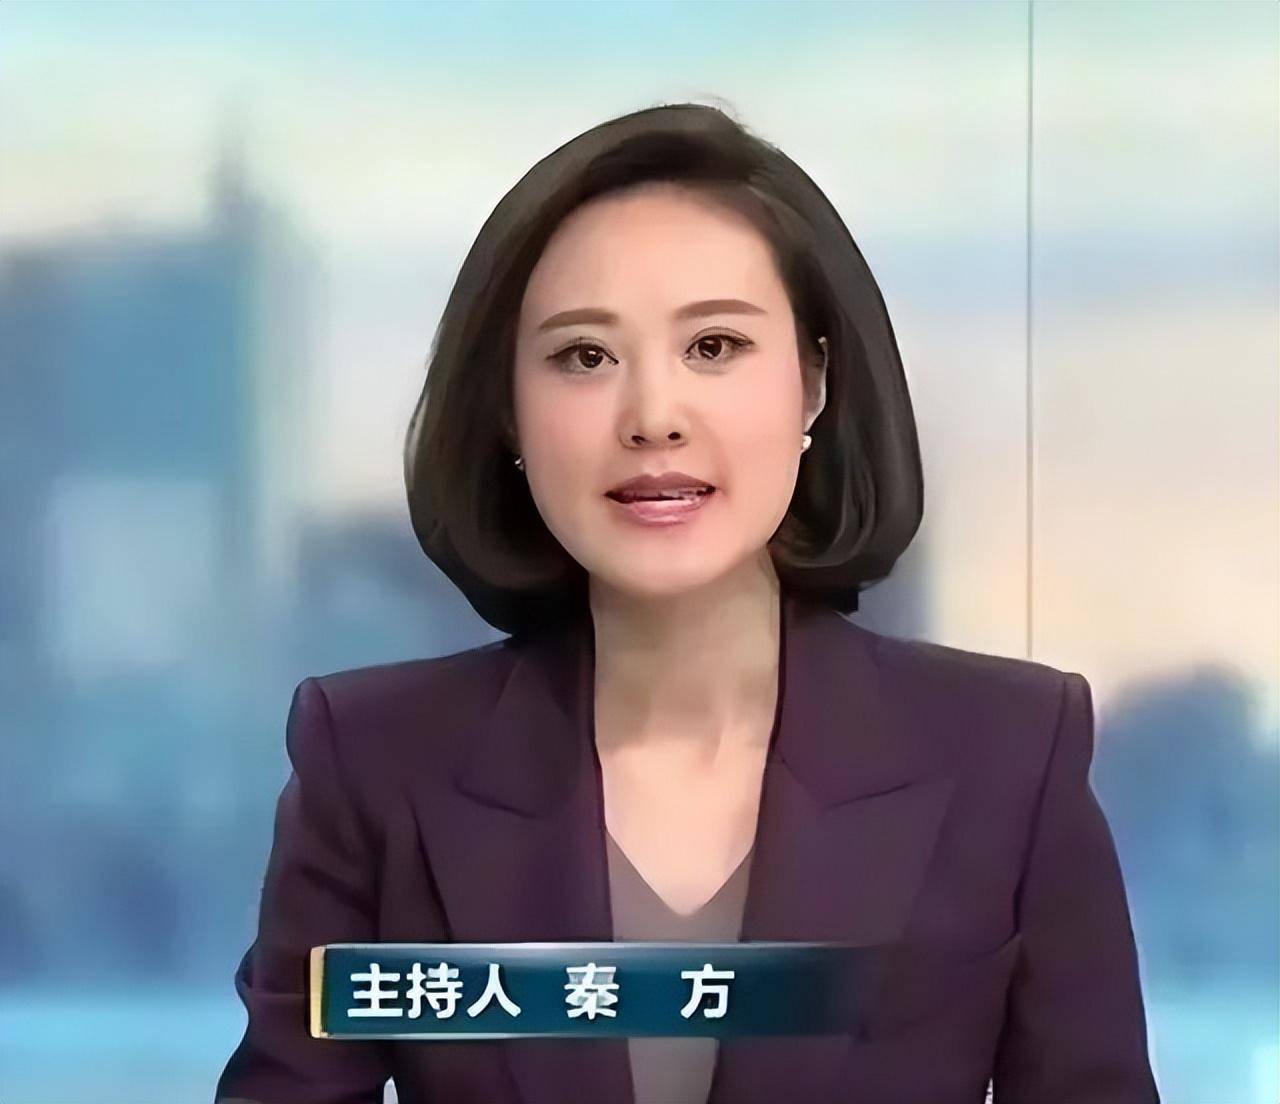 她曾是重庆最美高考状元,如今成为央视主持人,现42岁仍孑然一身